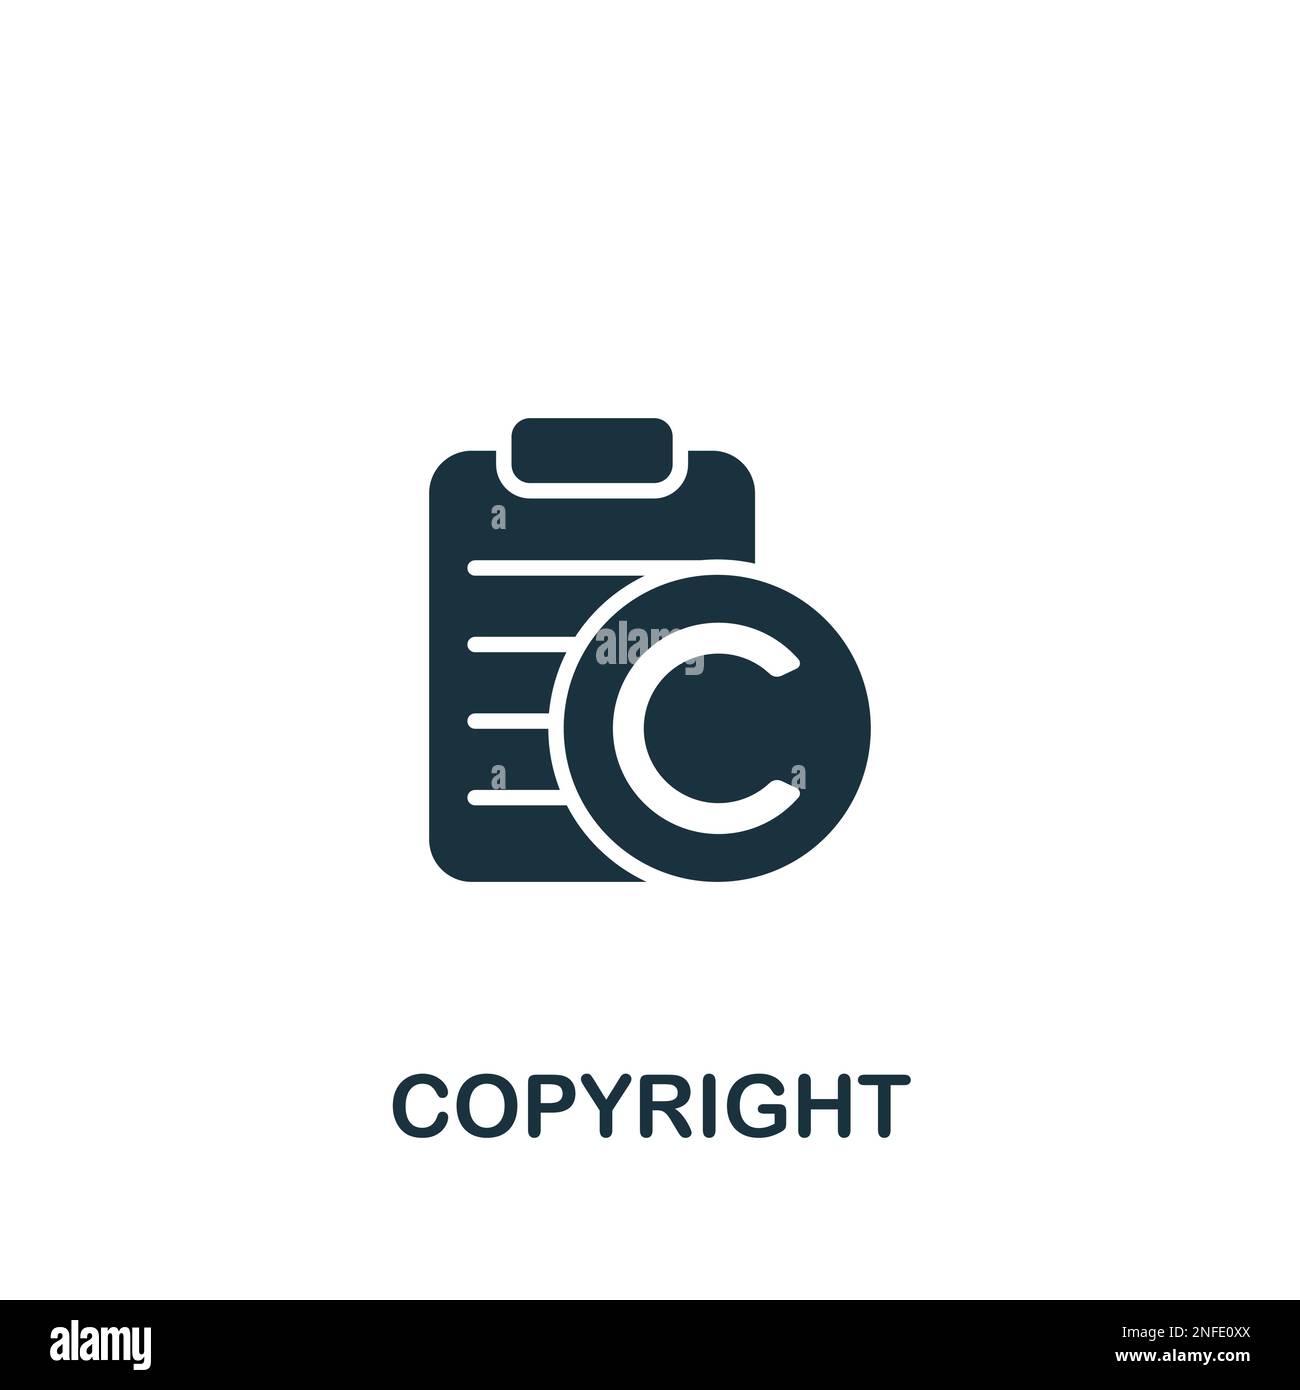 Icono Copyright. Signo simple monocromo de la colección de propiedad intelectual. Icono de derechos de autor para logotipo, plantillas, diseño web e infografías. Ilustración del Vector